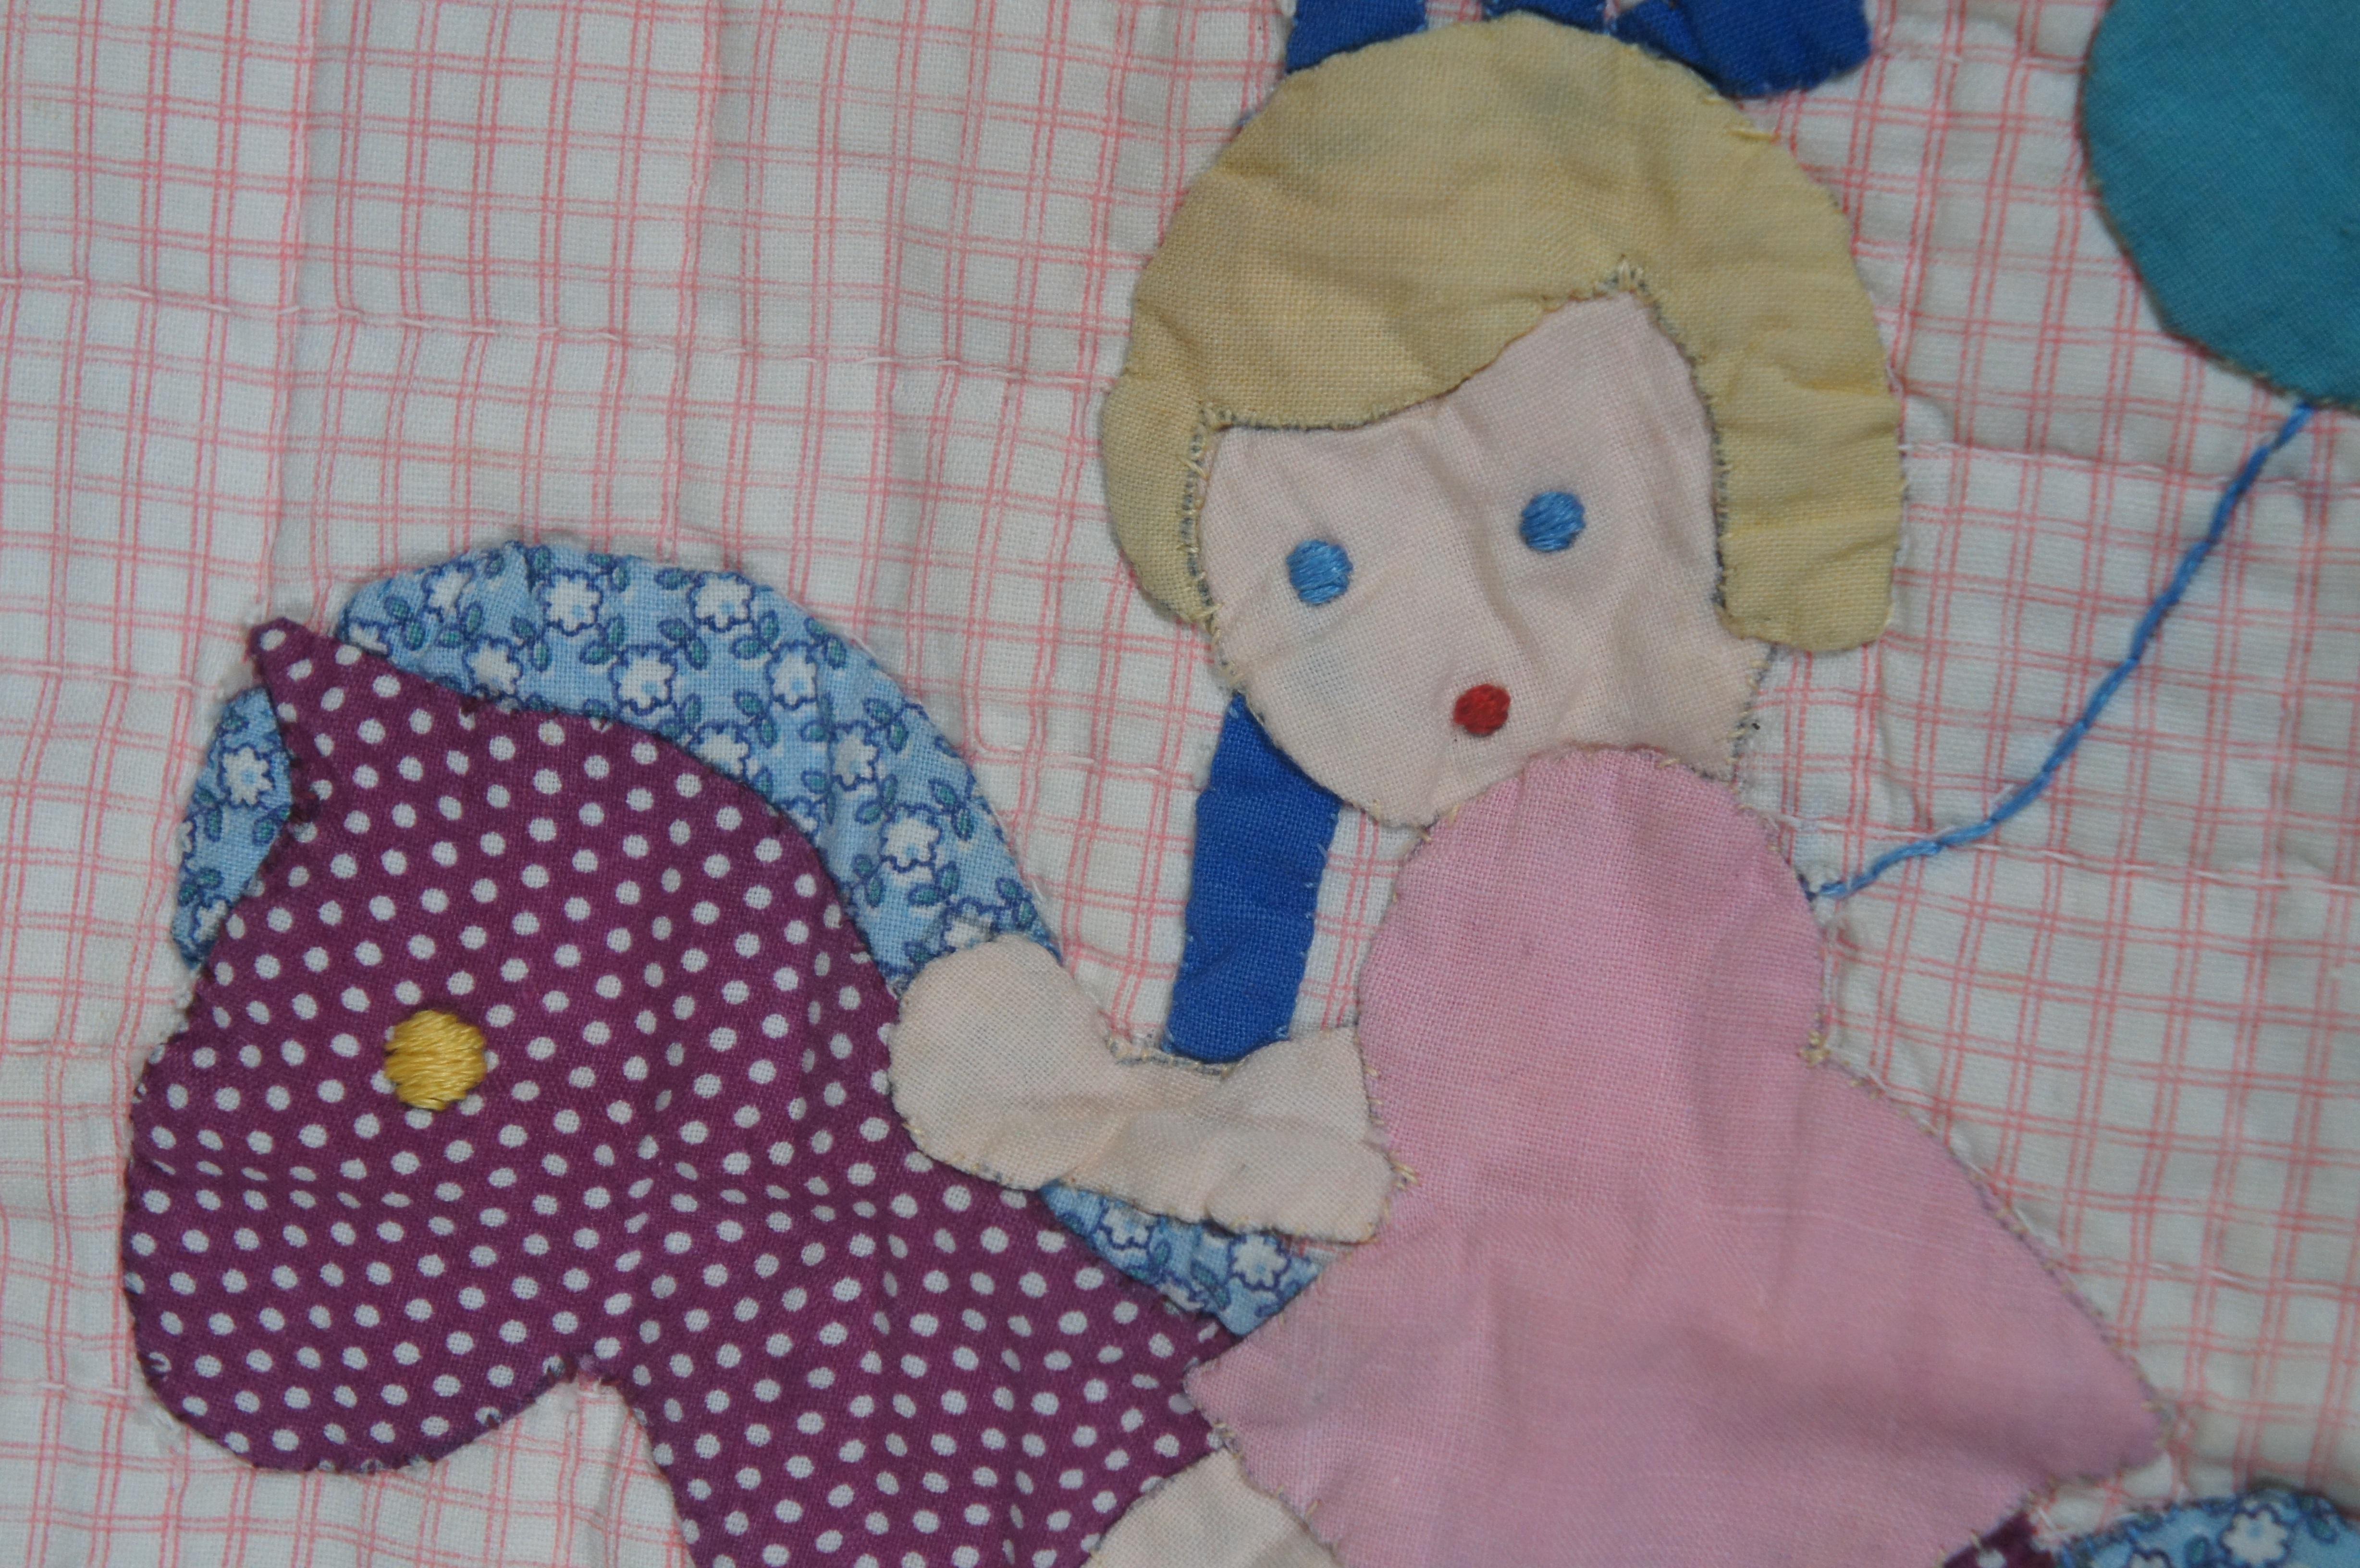 1960s Vintage Merry Go Round Crib Quilt Applique Cotton Childrens Toddler 53.5